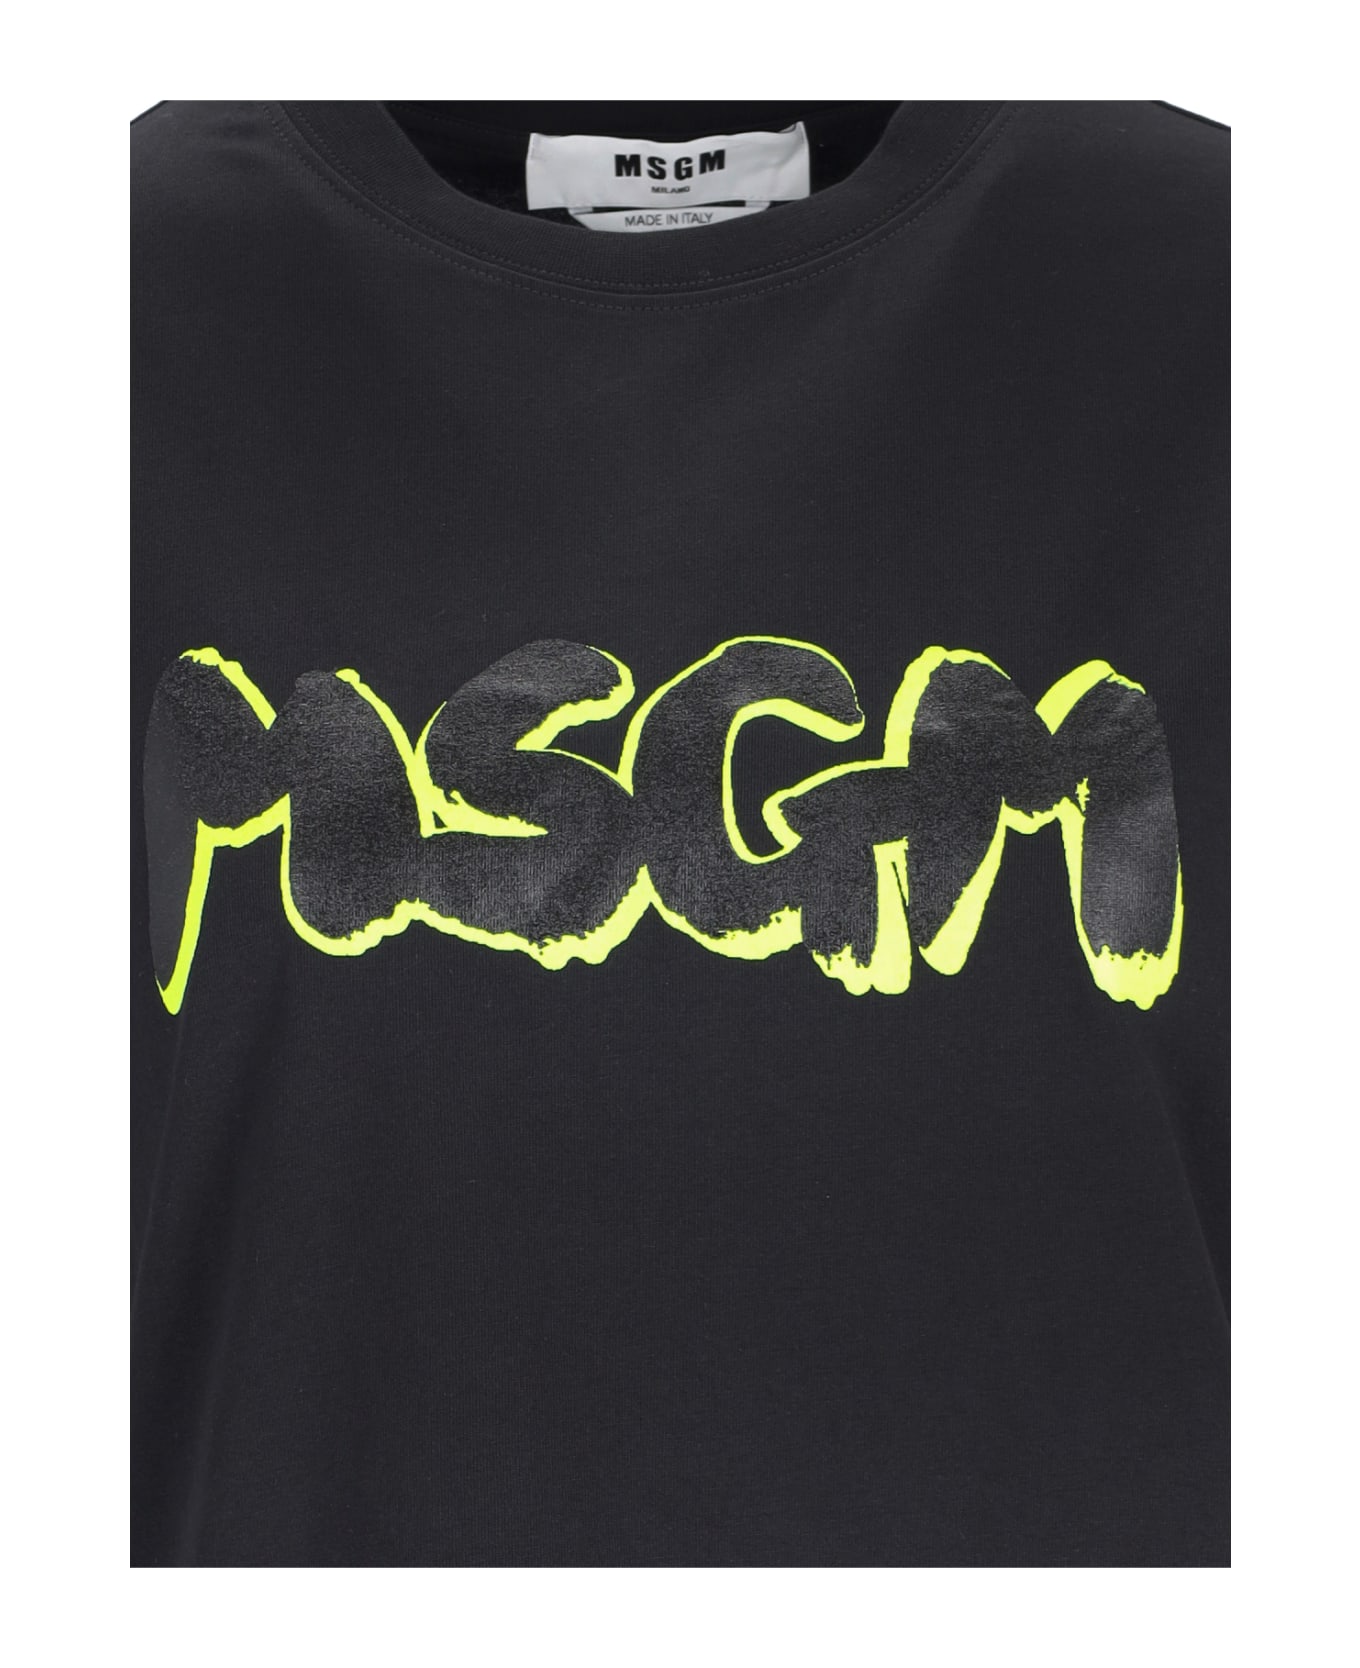 MSGM T-shirt Logo Msgm - Black   Tシャツ